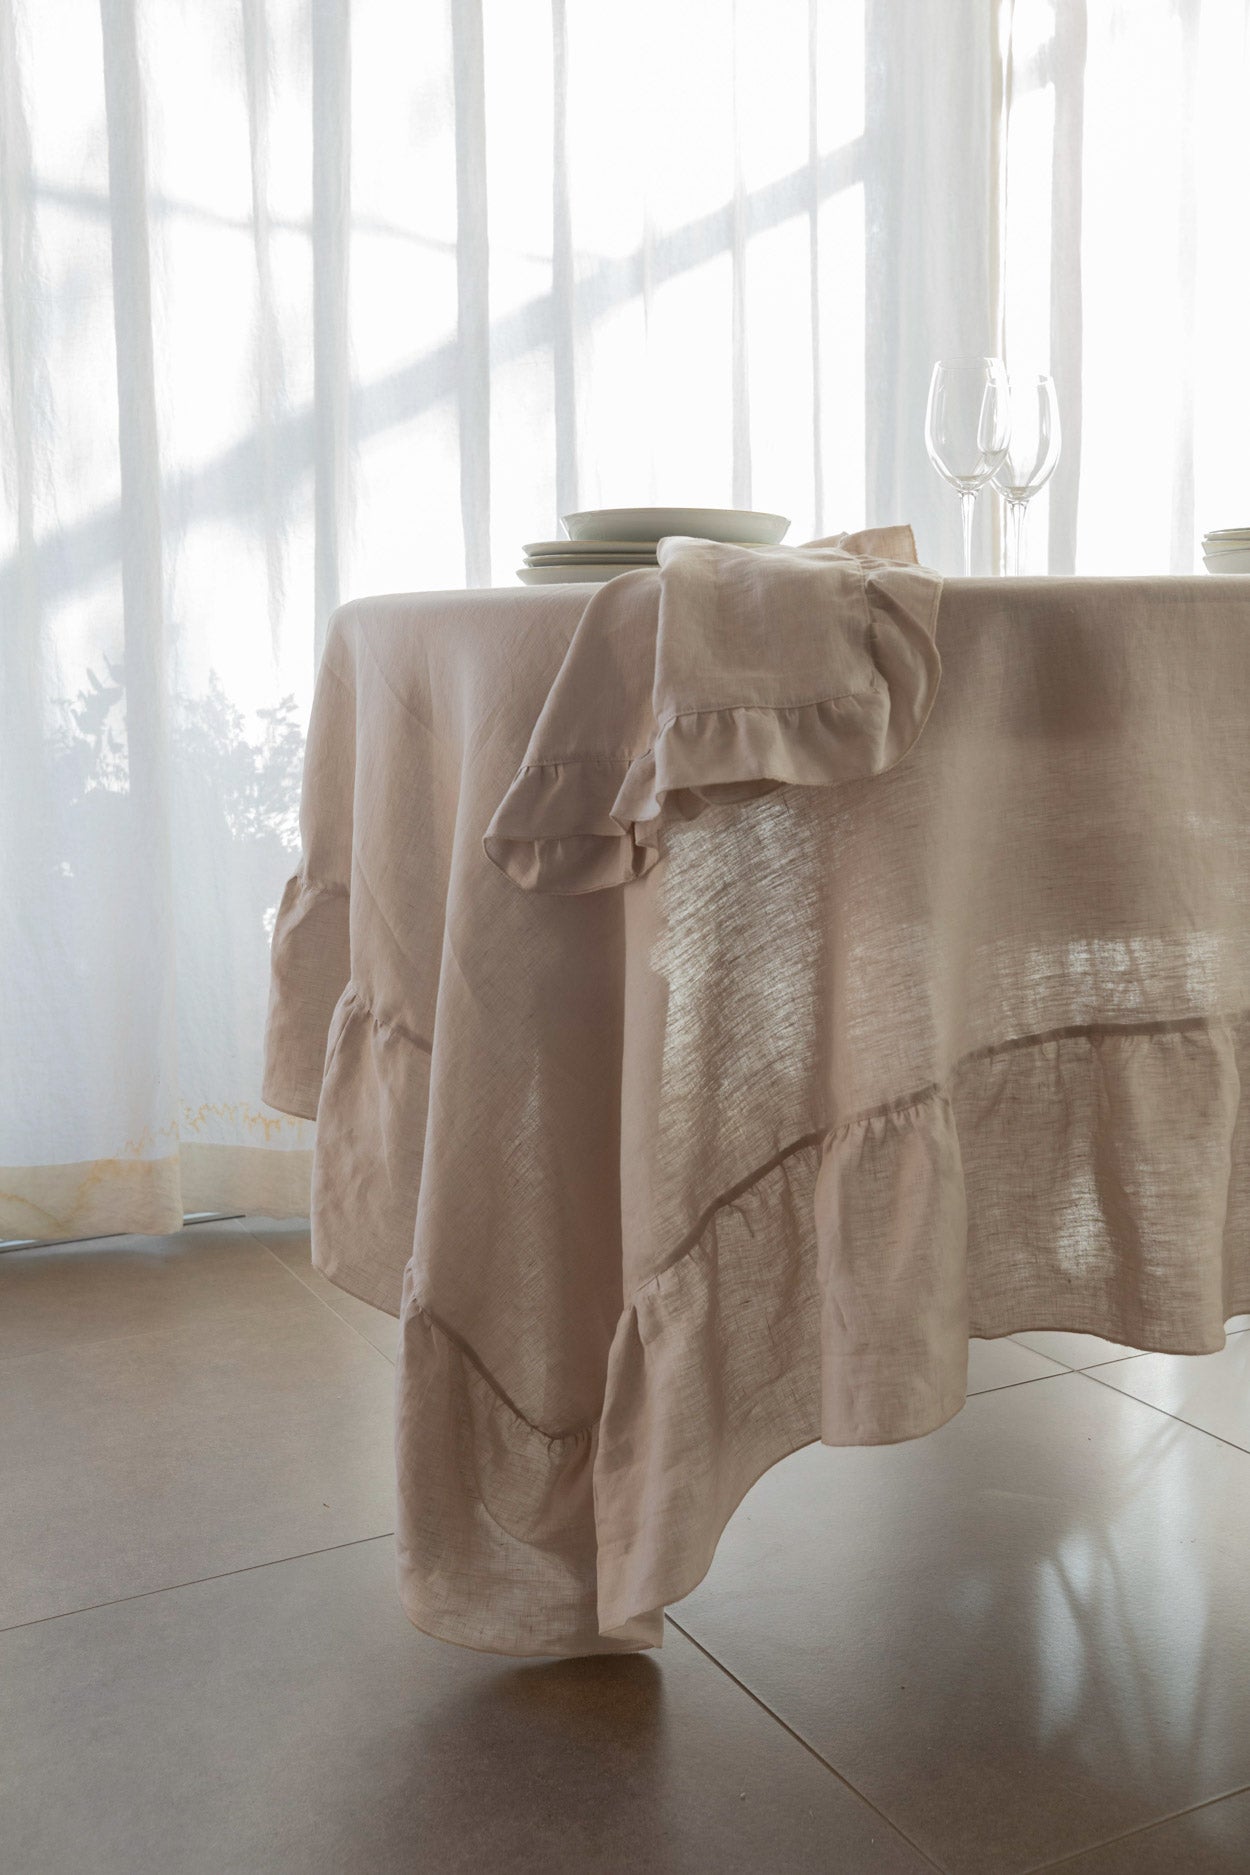 DEMETRA/FORTUNA - Tovaglia in puro lino lavato rifinita con una grande rouche